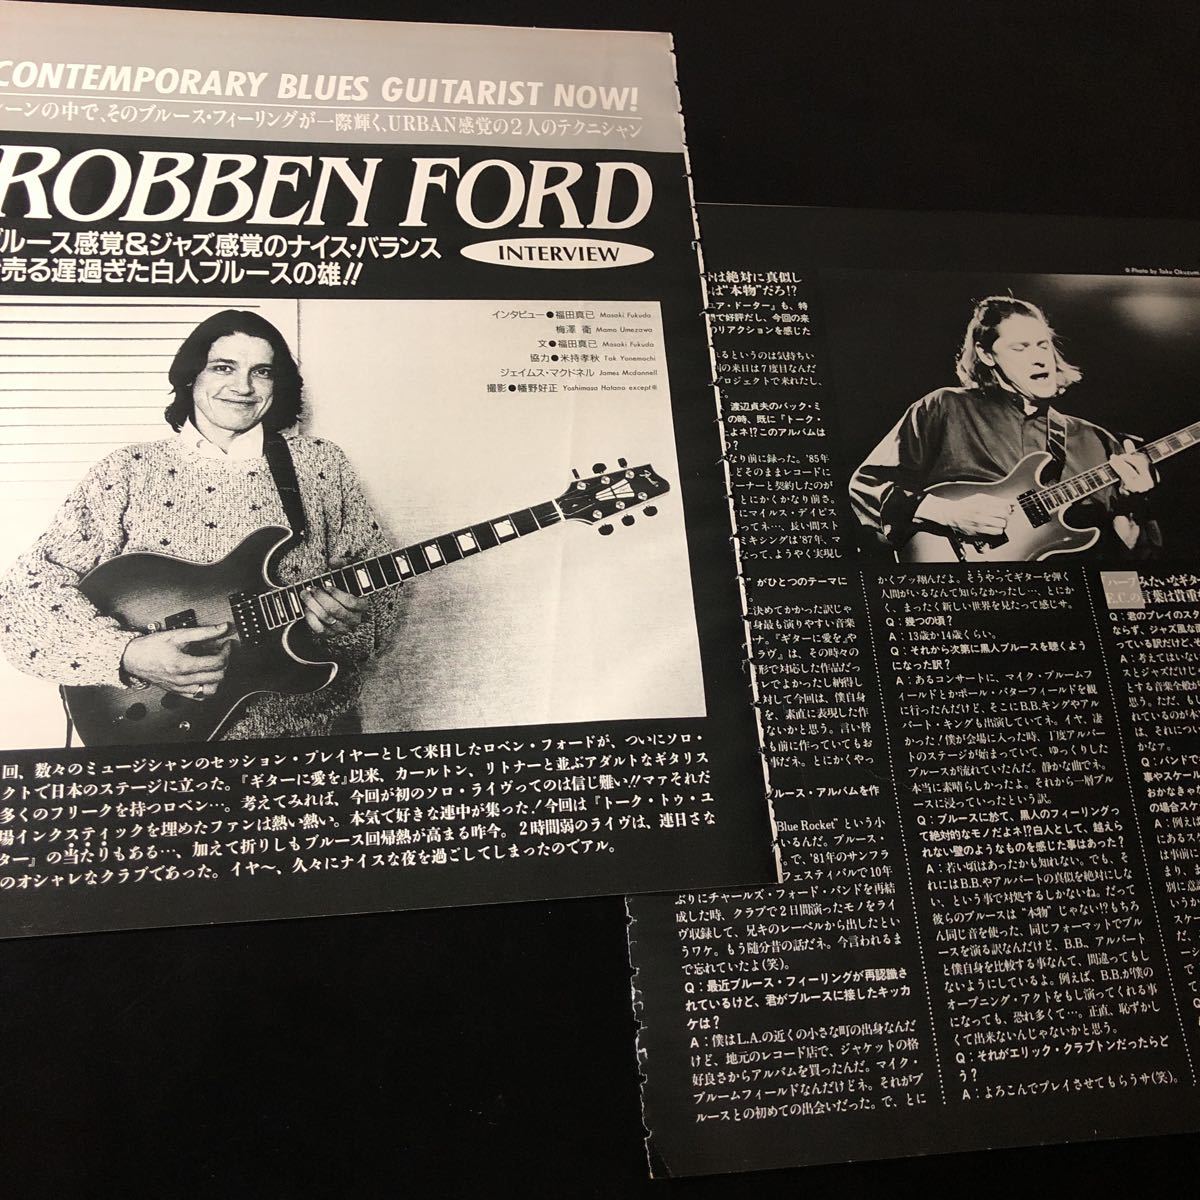 0925-1 レア切り抜き ロベン・フォード 1989年インタビュー Robben Fordの画像1